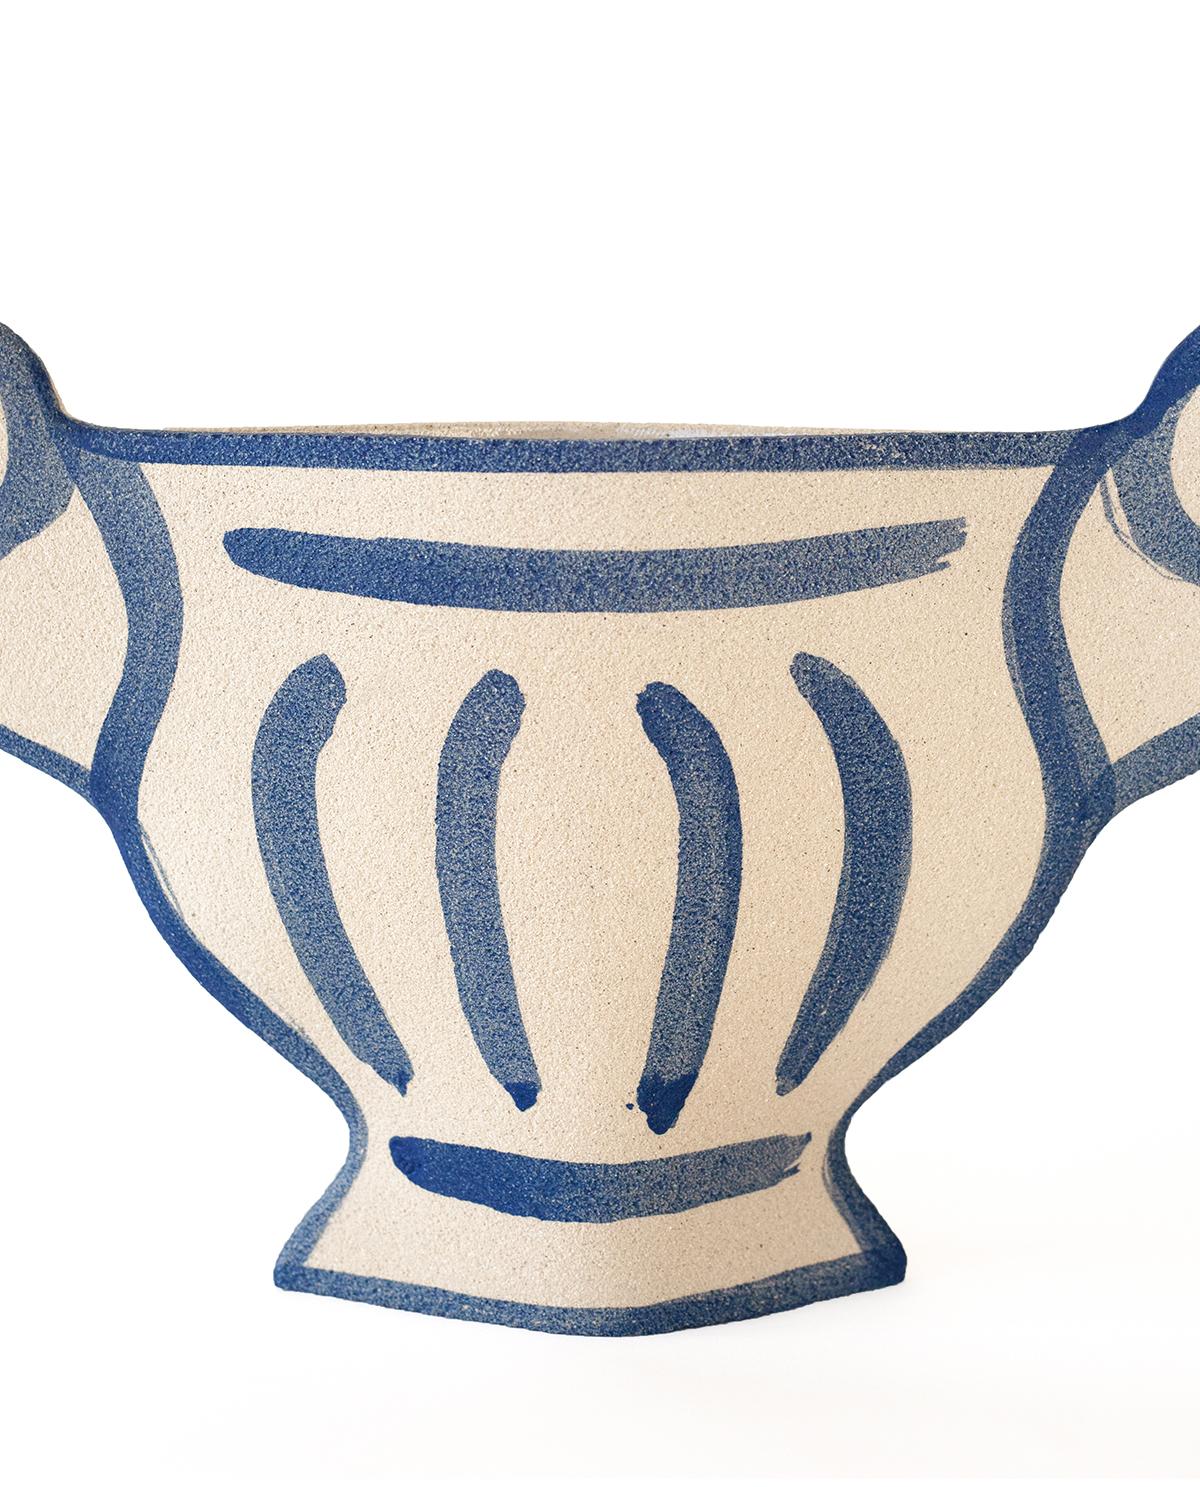 ceramique grecque moderne